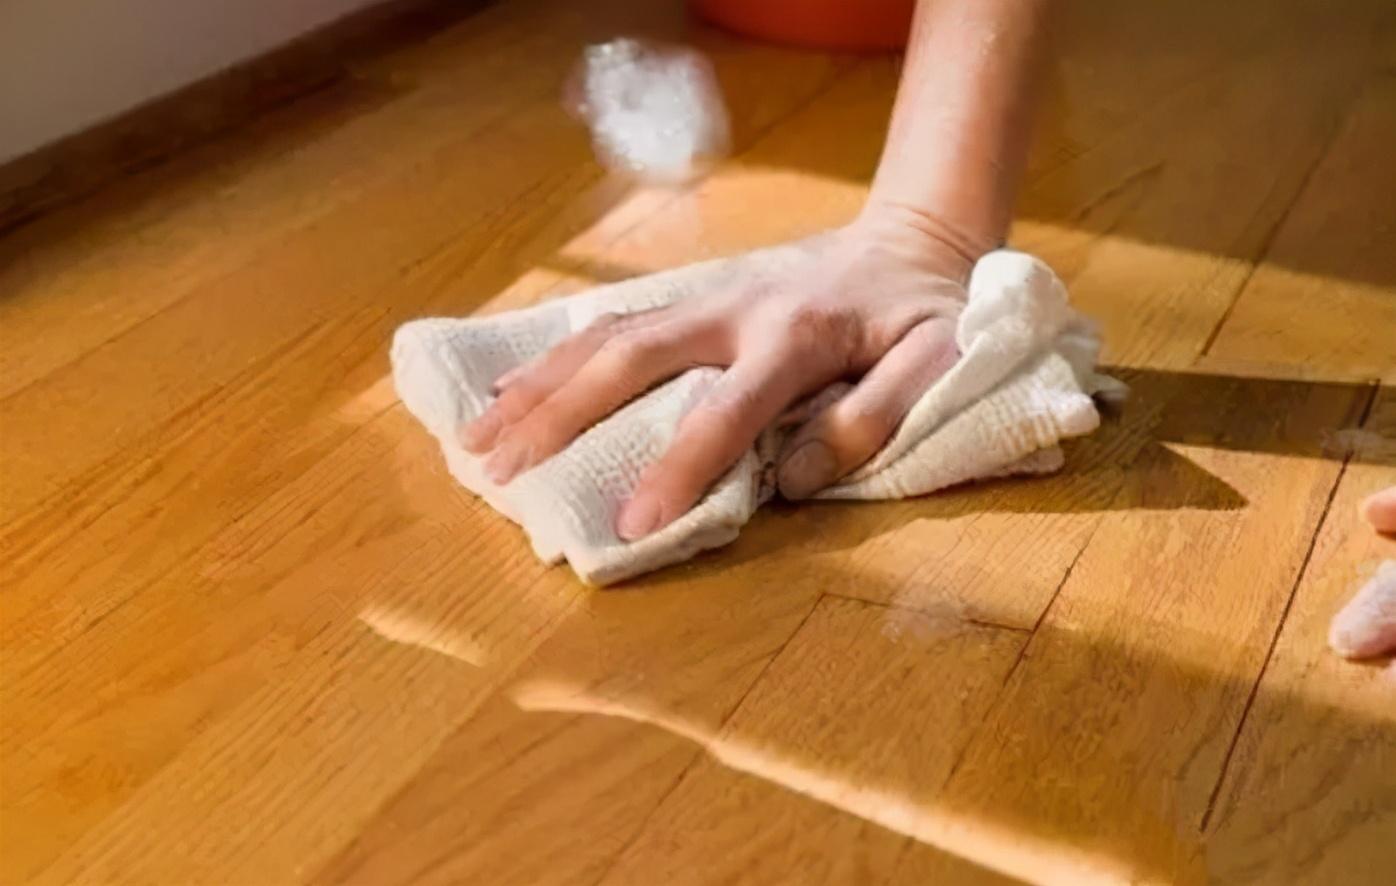 9 mẹo dọn dẹp nhà cửa siêu thiết thực này được tổng hợp bởi những phụ nữ yêu thích sự sạch sẽ - Ảnh 10.